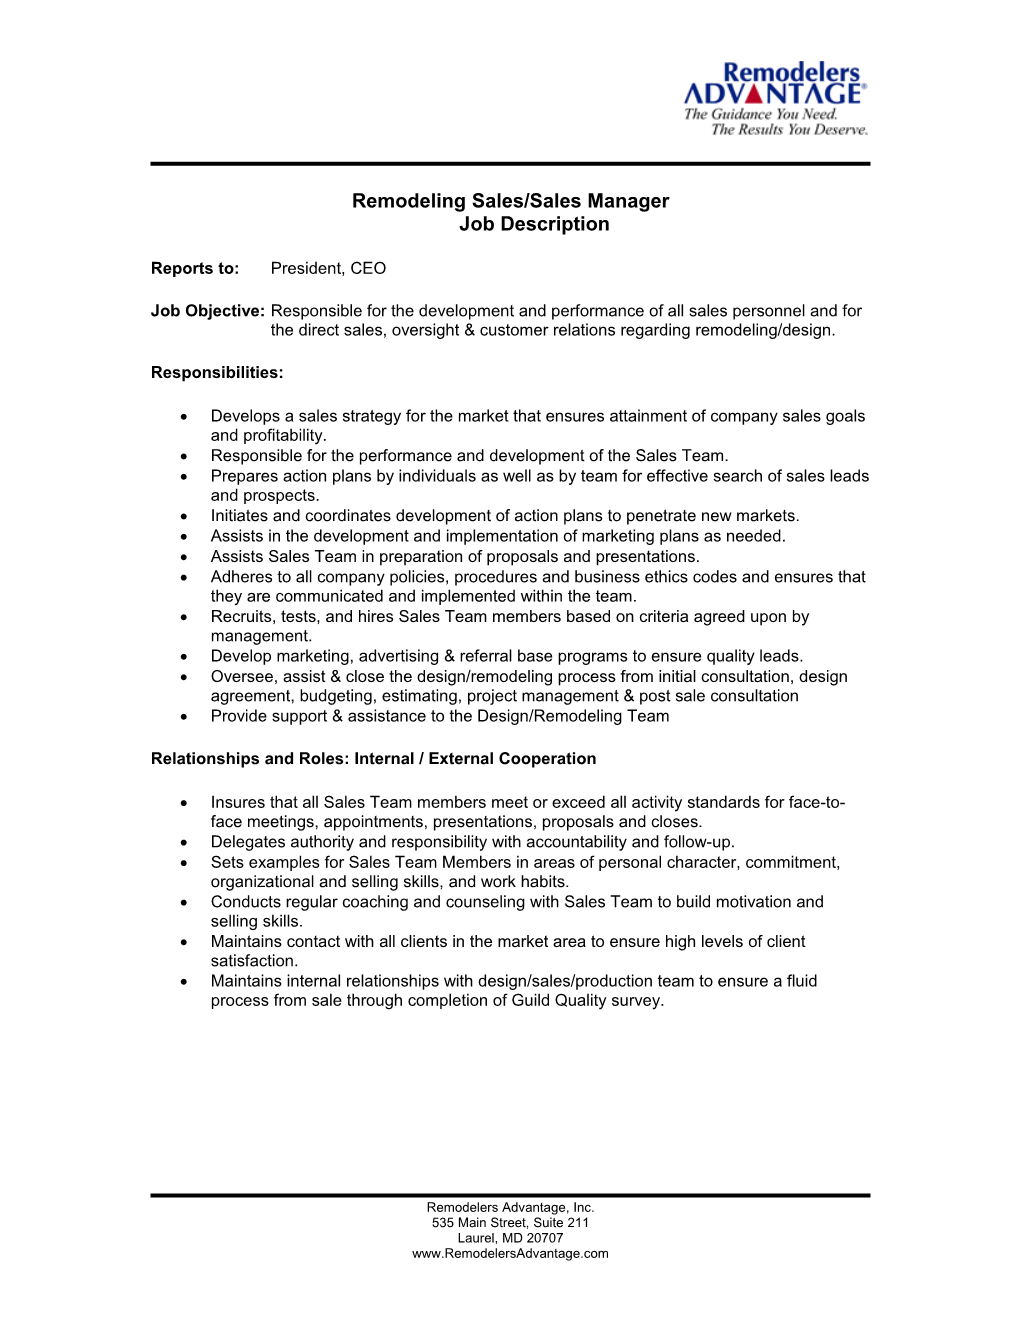 Remodeling Sales/Sales Manager Job Description